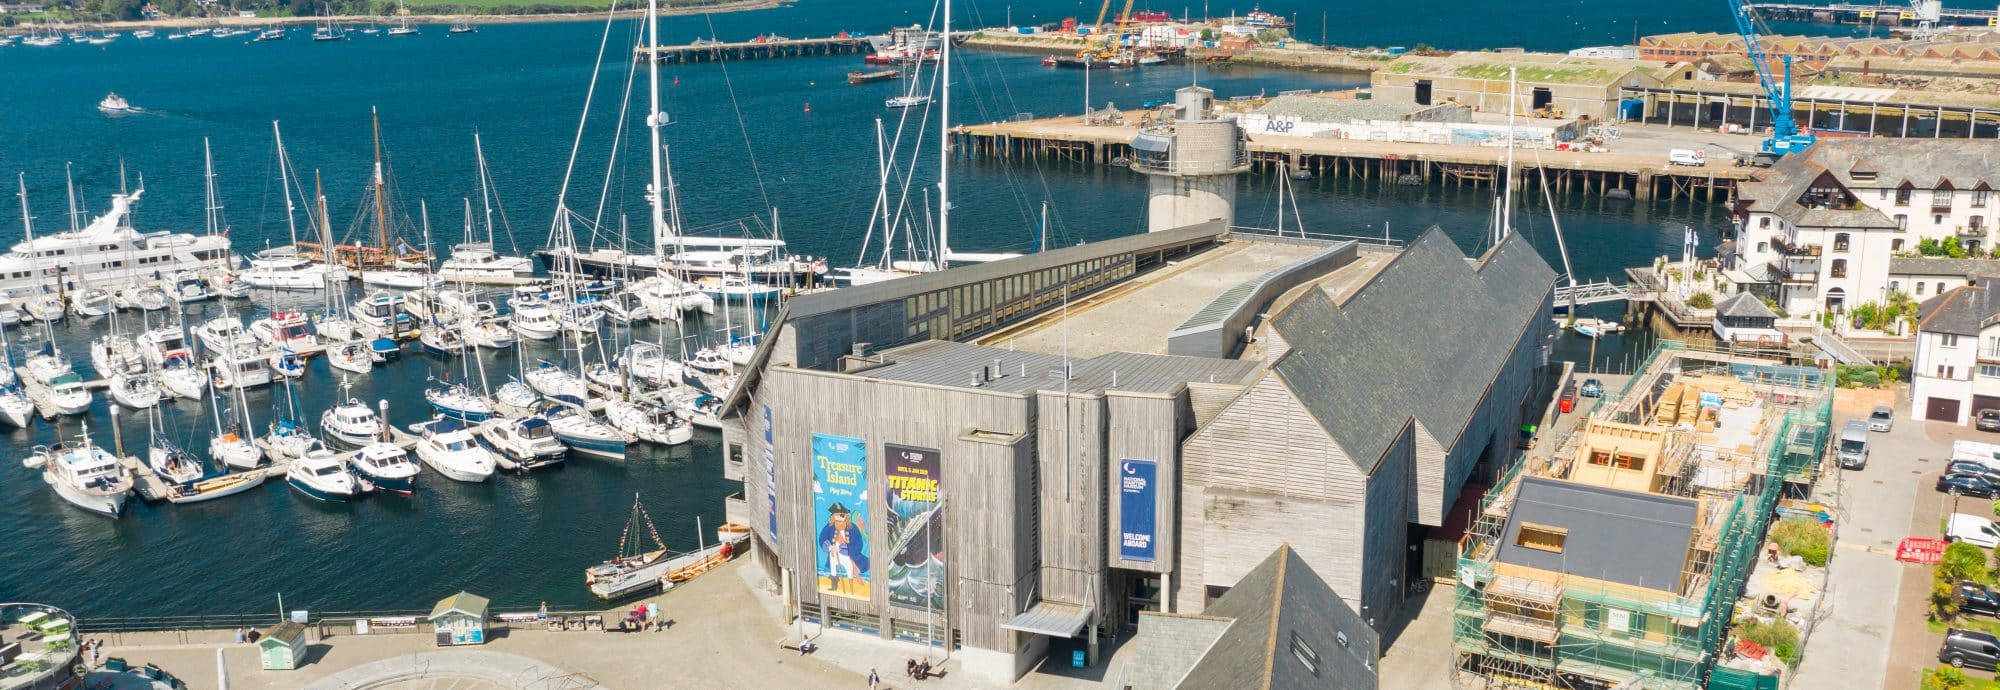 National Maritime Museum Cornwall aerial shot